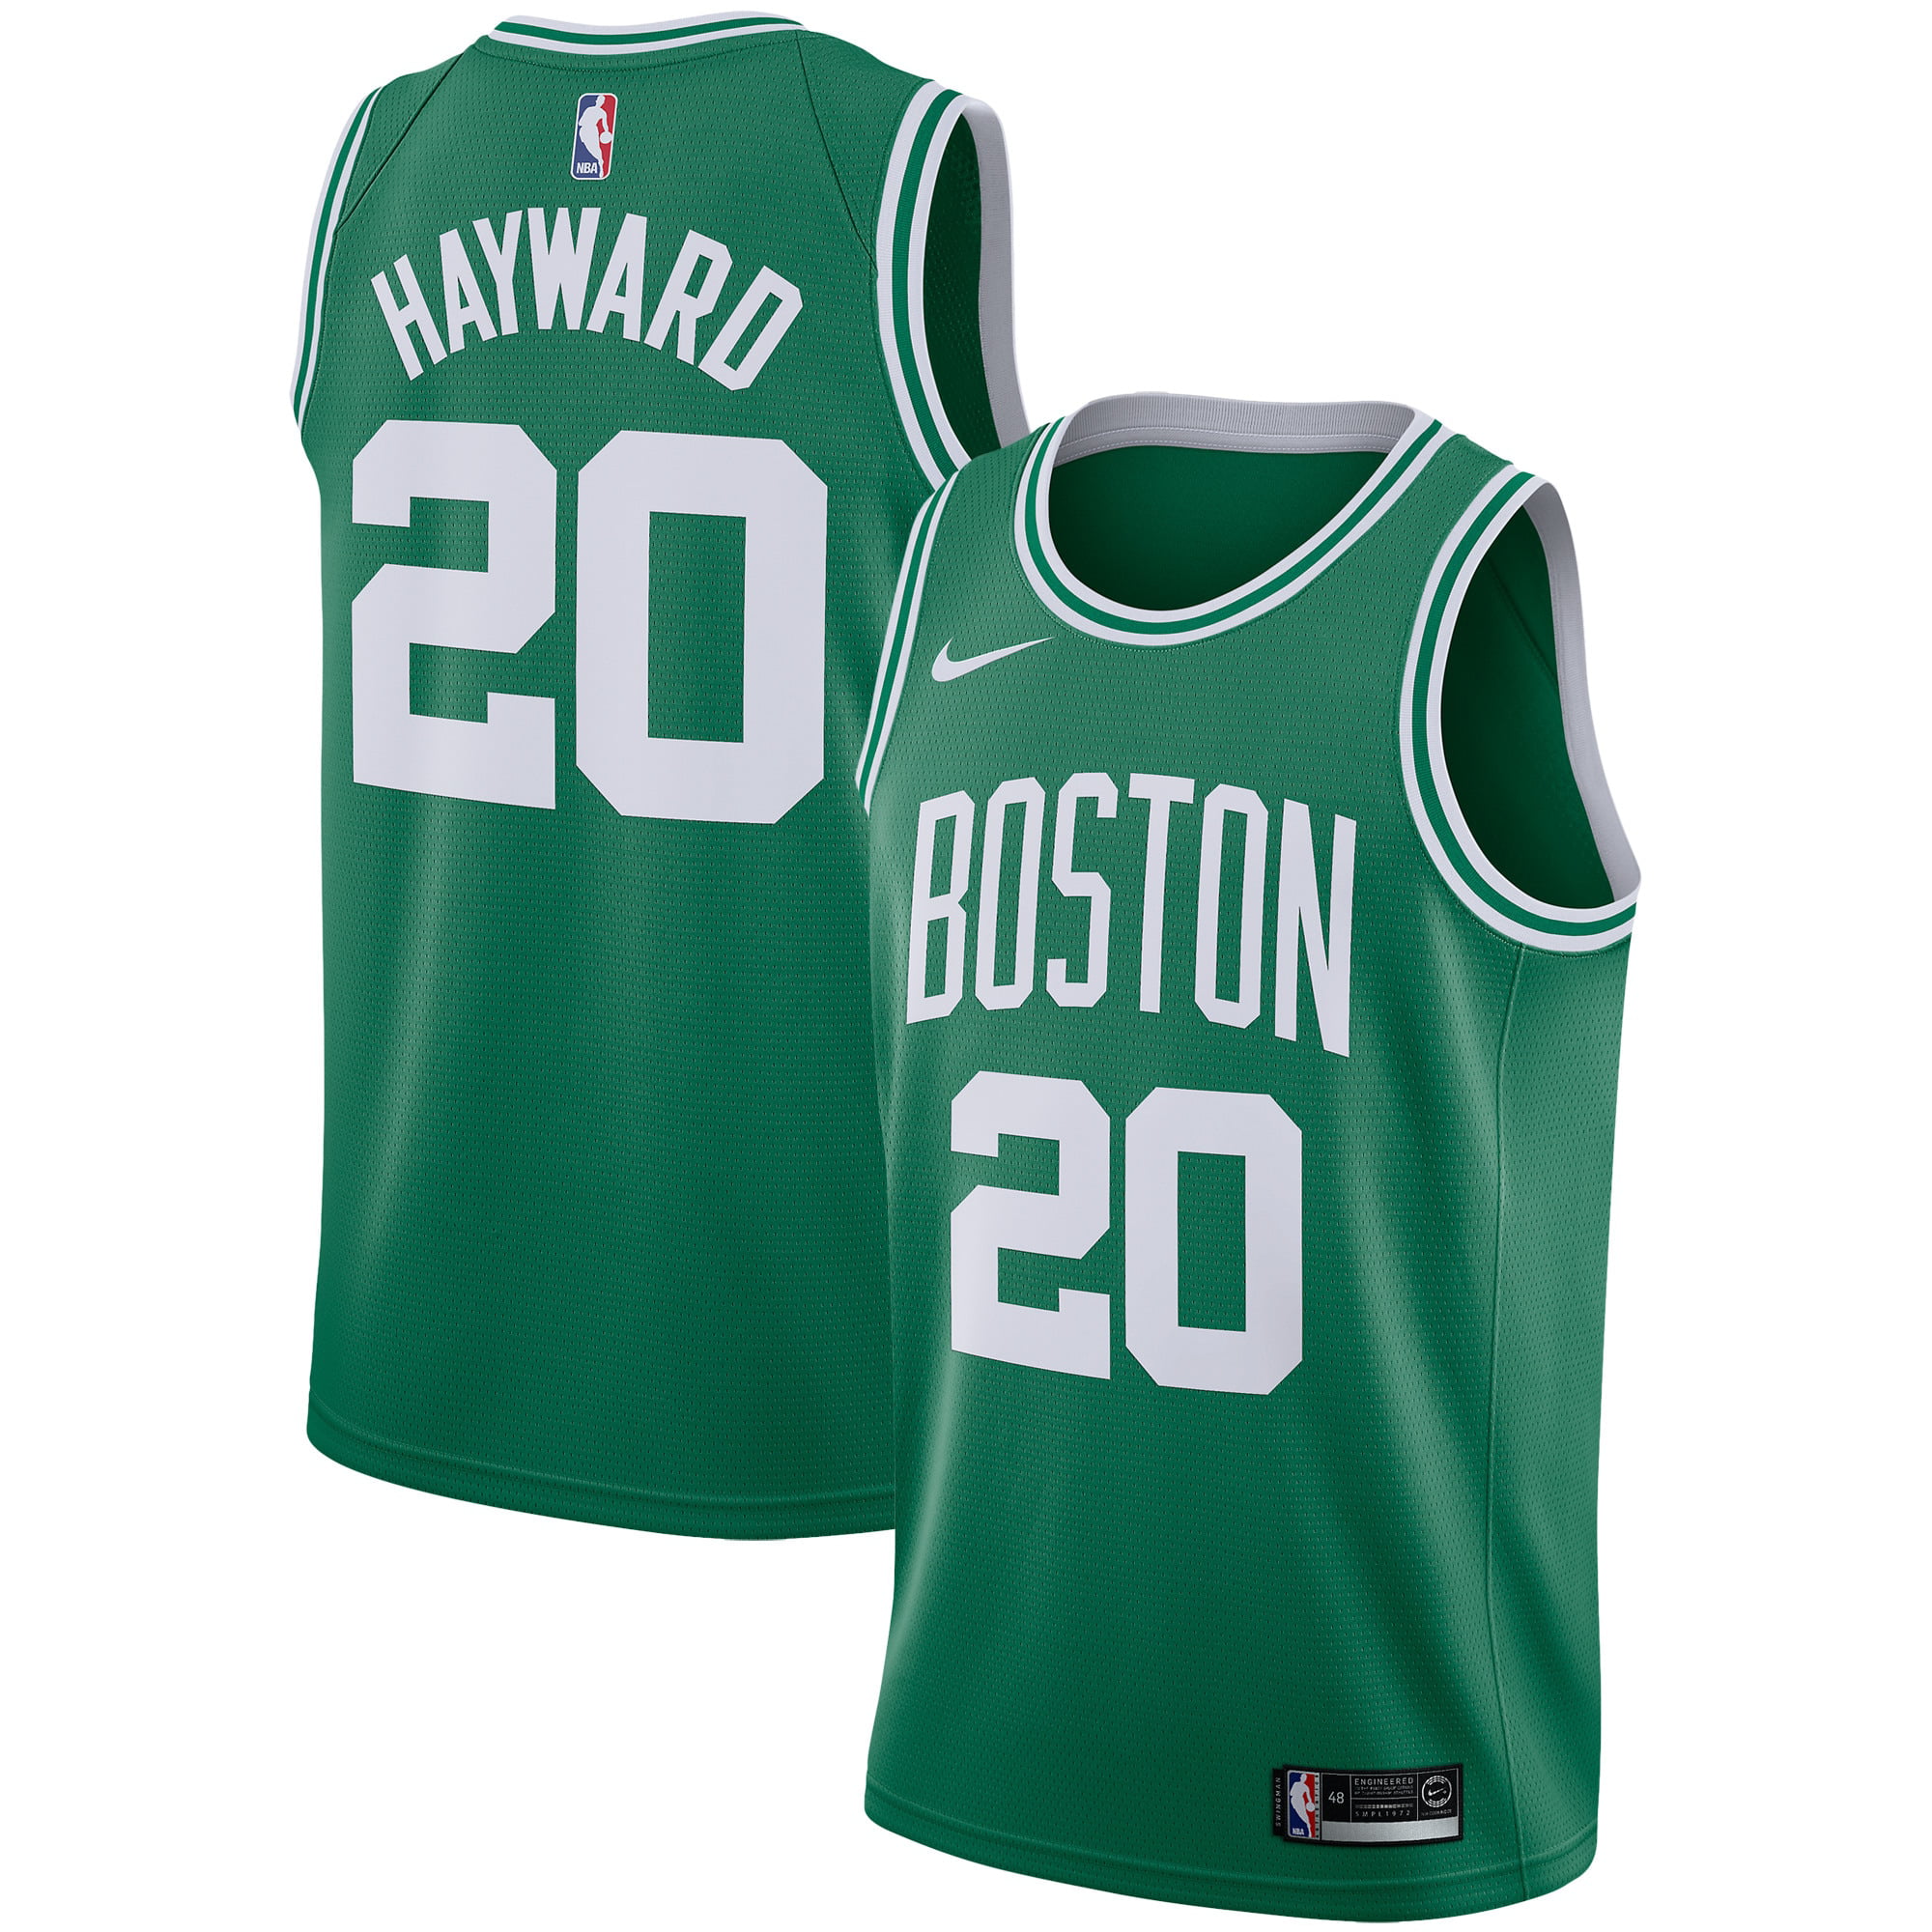 Boston Celtics Nike Swingman Jersey 